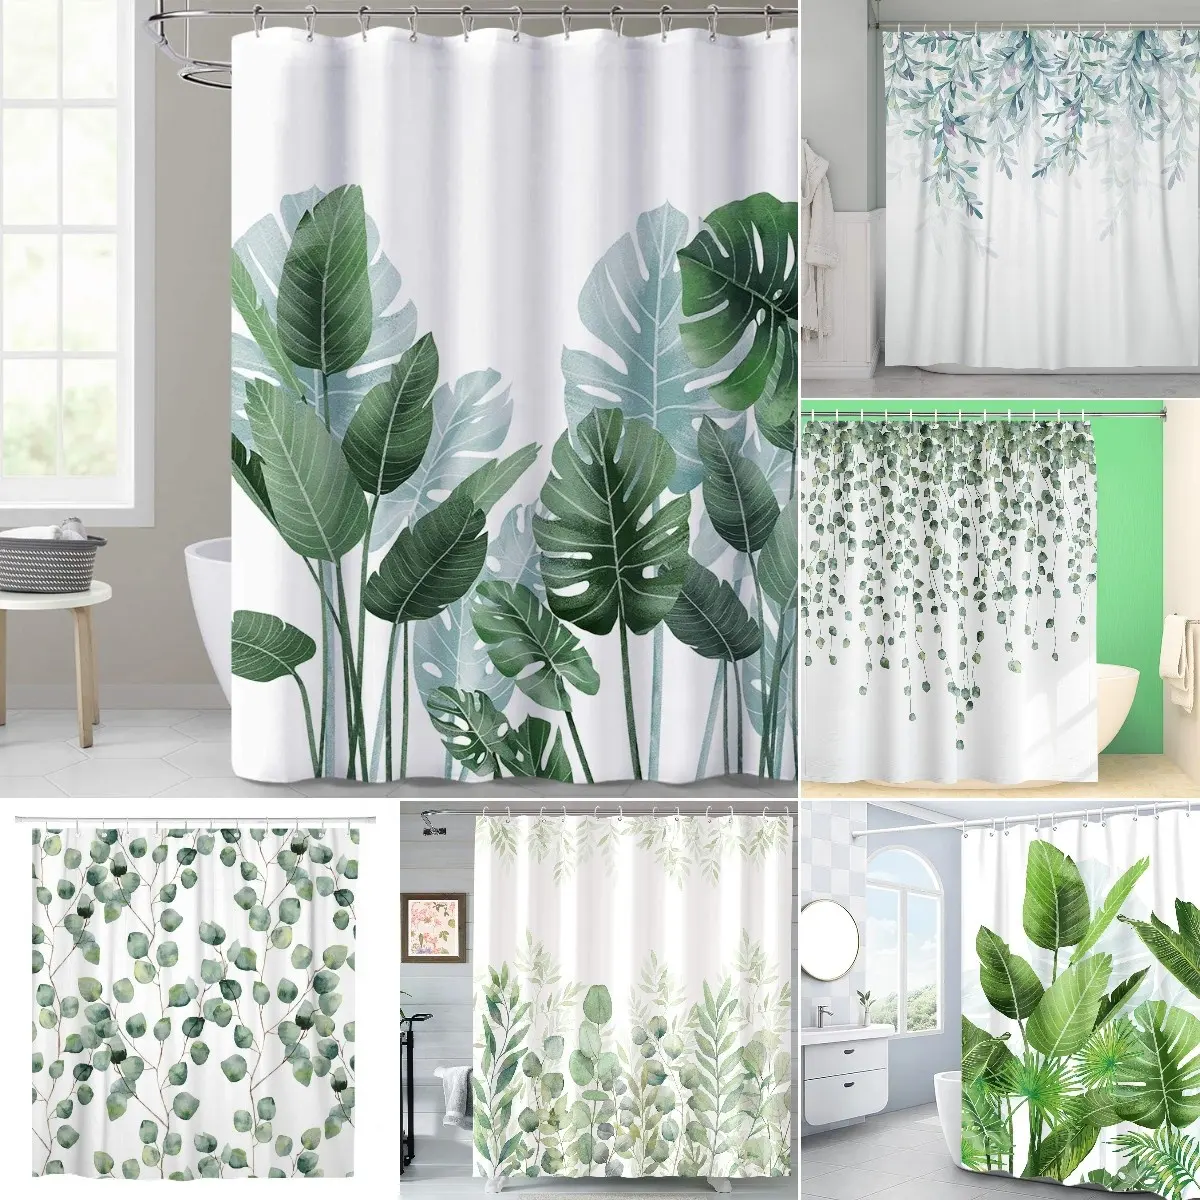 सफेद पृष्ठभूमि पर उष्णकटिबंधीय हरे रंग की पत्तियों का पौधा बाथरूम की वर्षा और हुक के साथ स्नान के लिए सजावट